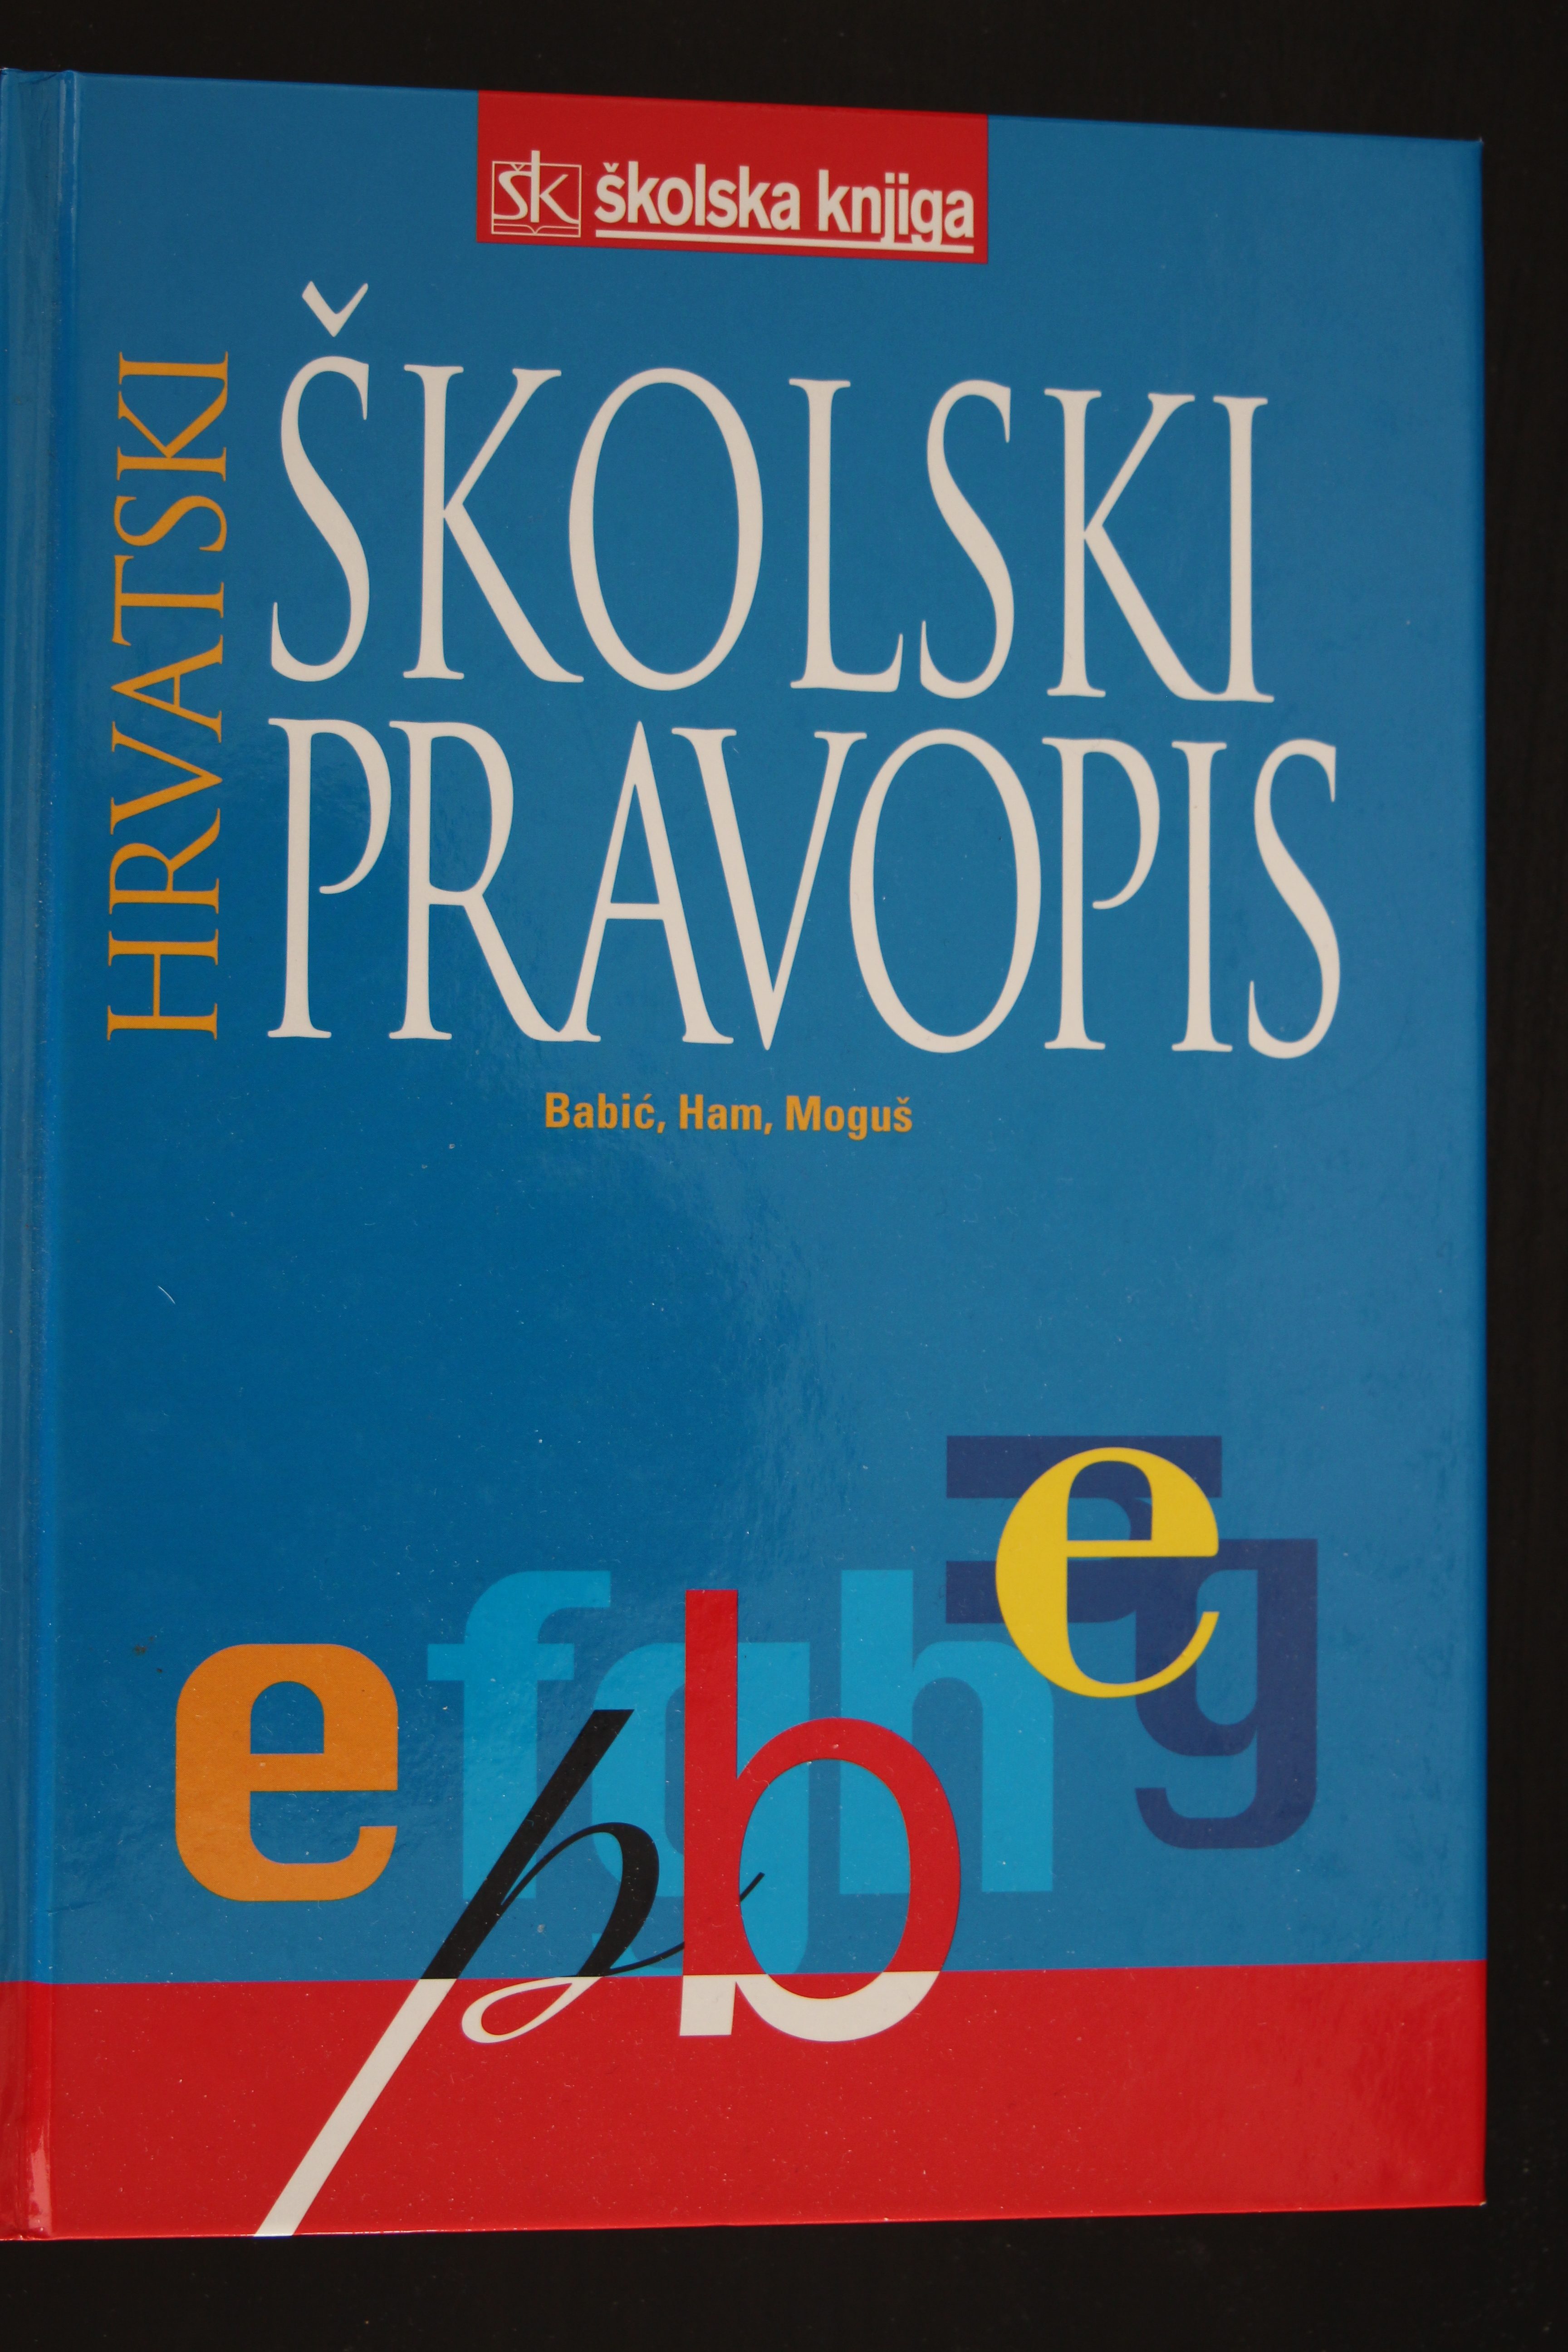 Prvi hrvatski pravopis autor